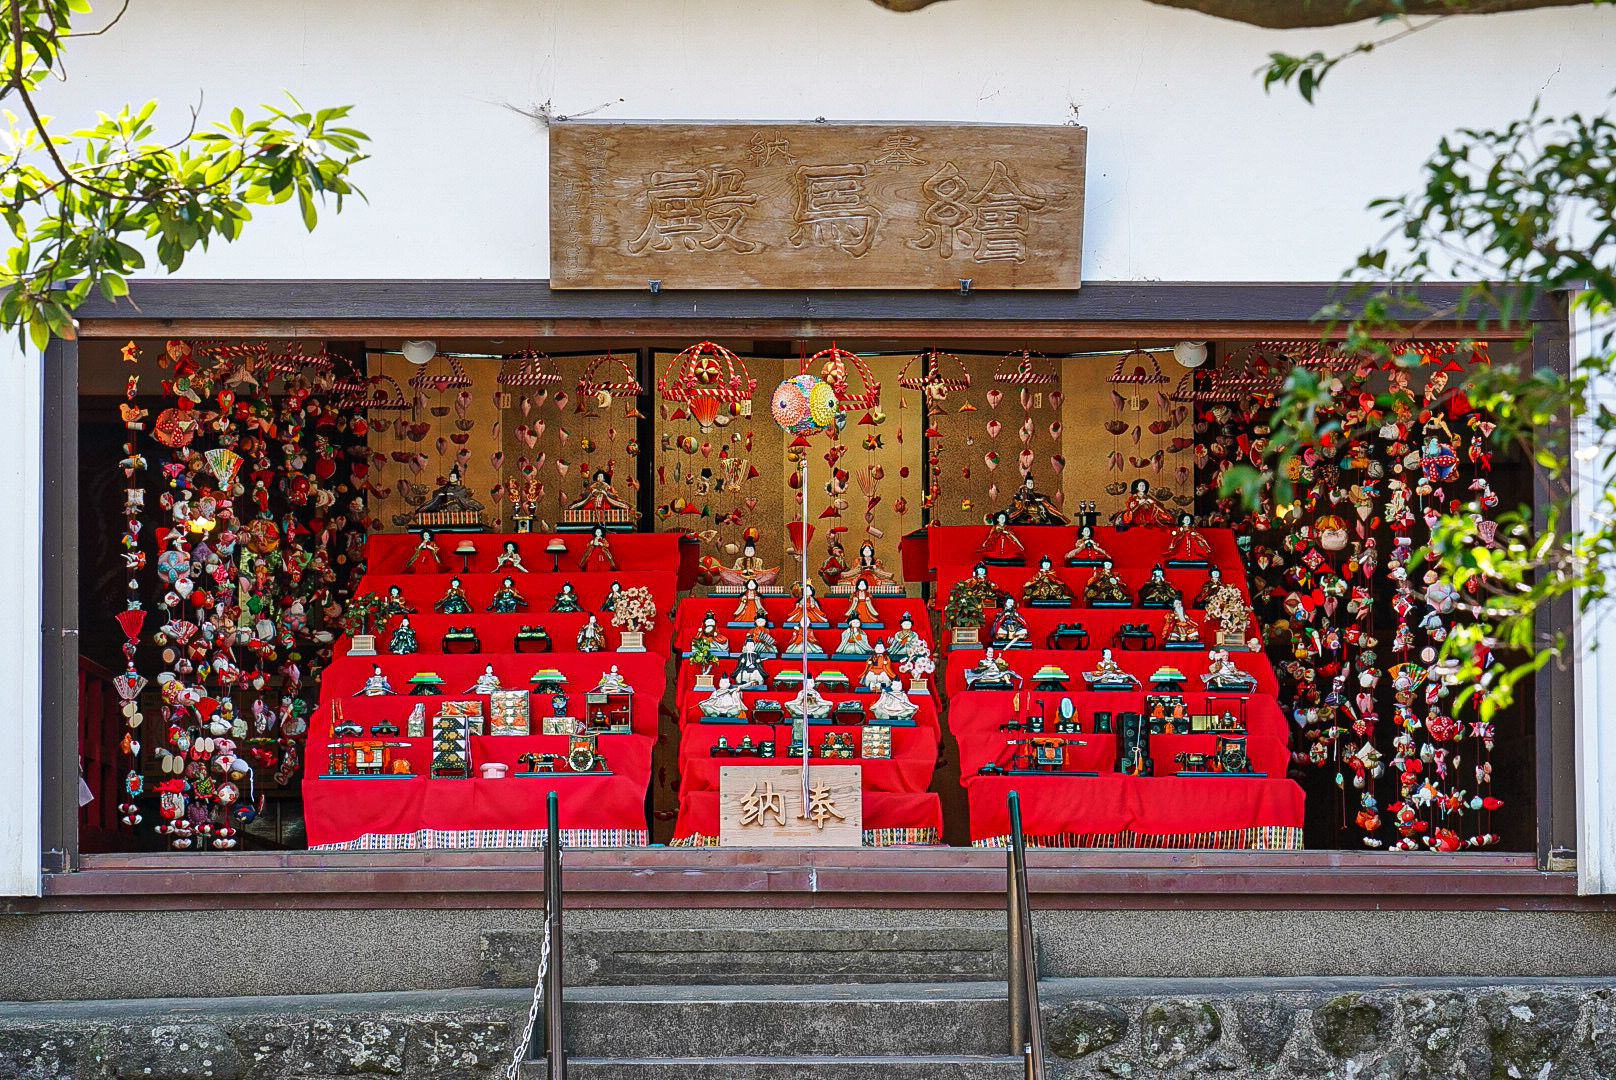 八幡神社の絵馬殿に展示されている雛飾りと雛のつるし飾り